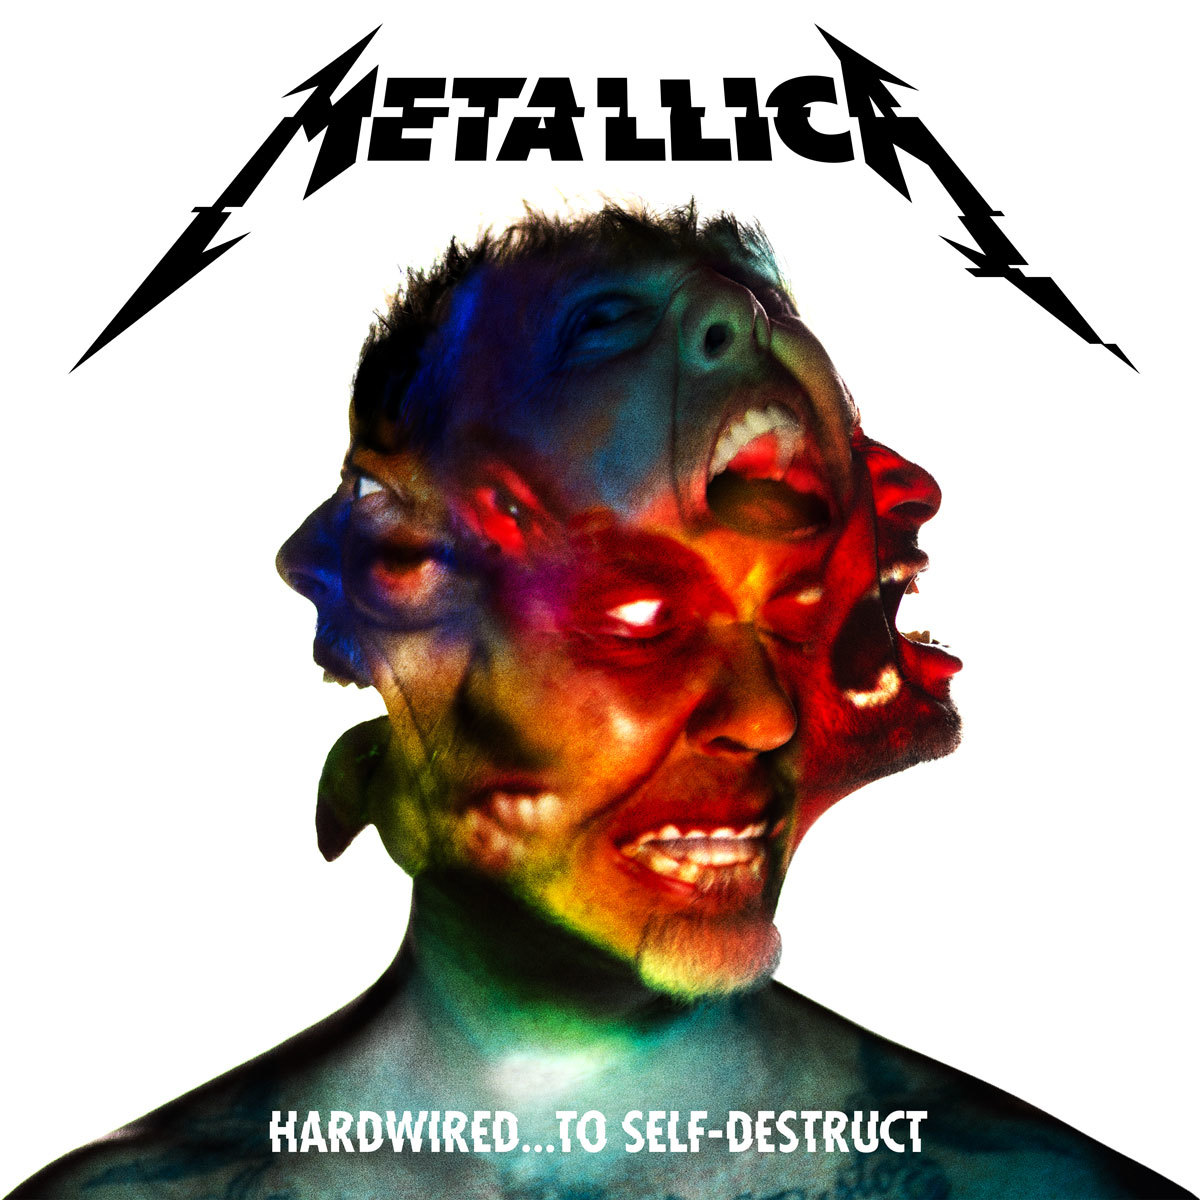 Metallica… Rise or Self Destruct?